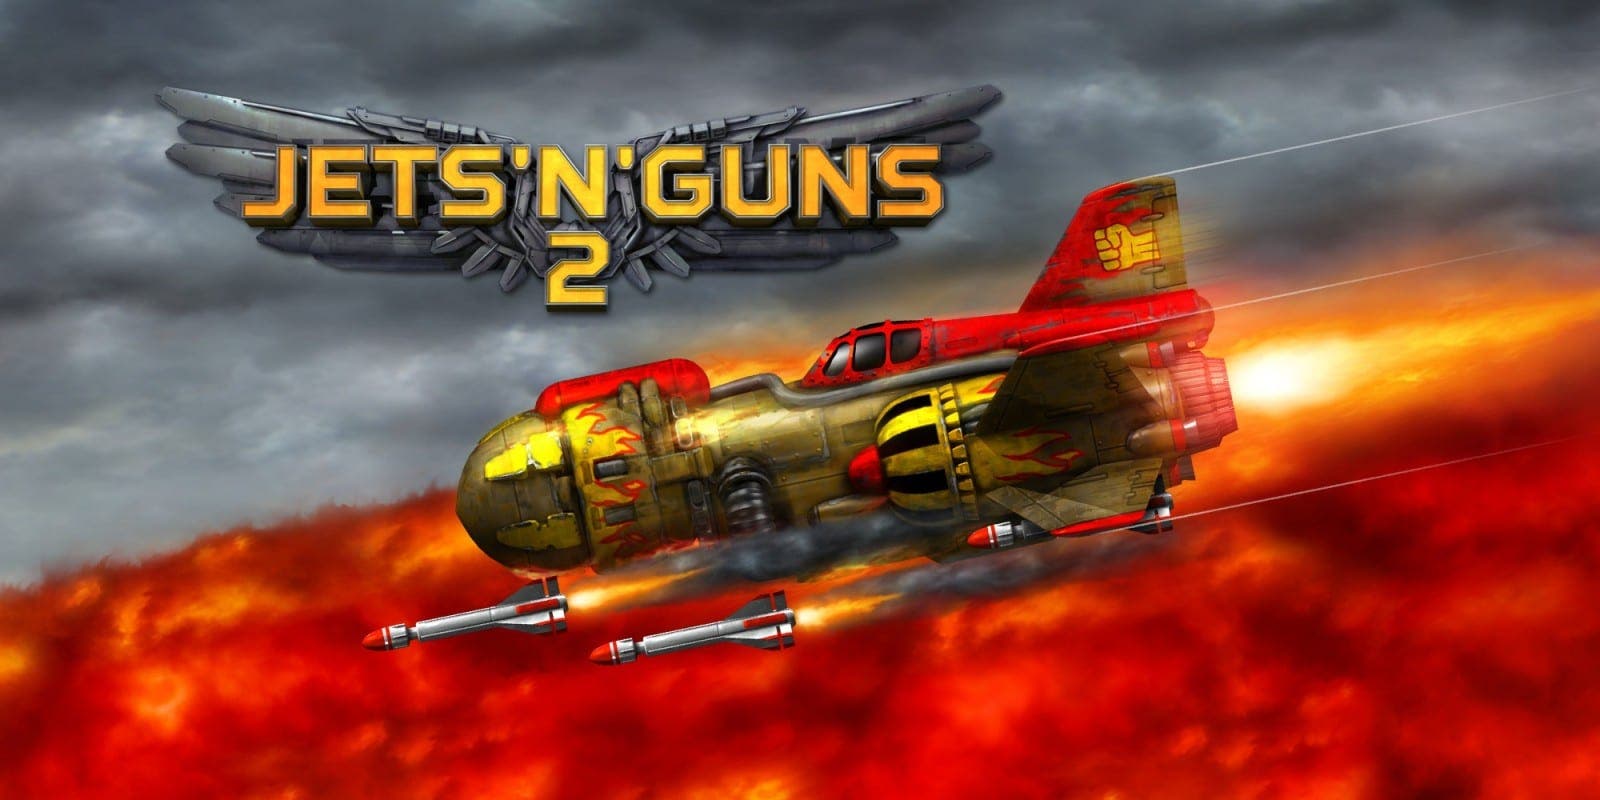 Jets’n’Guns 2 confirma su estreno para el 26 de agosto en Nintendo Switch